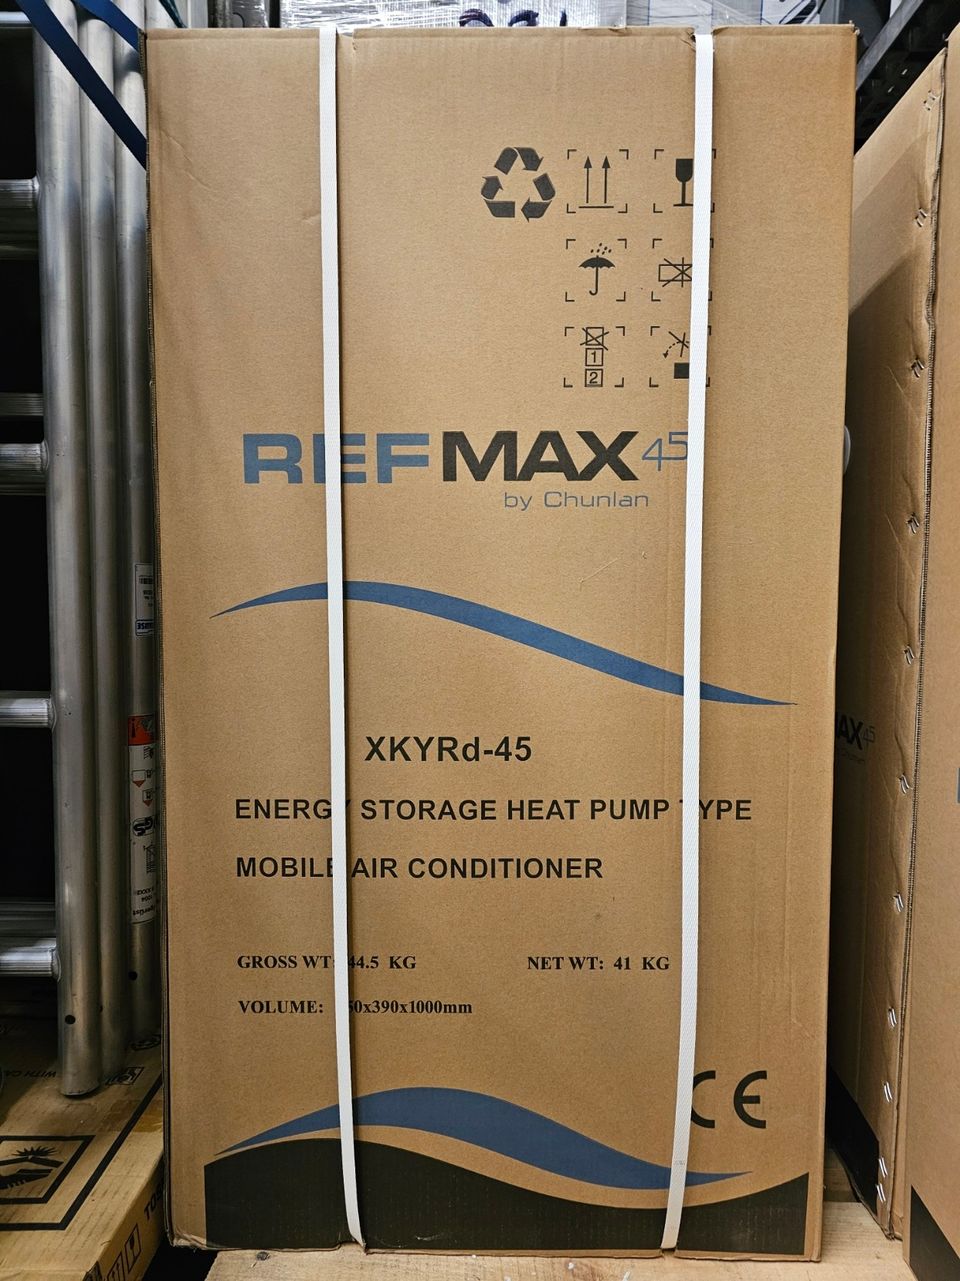 REFMAX 45 Jäähdytysenergiaa varaava siirrettävä ilmastointilaite